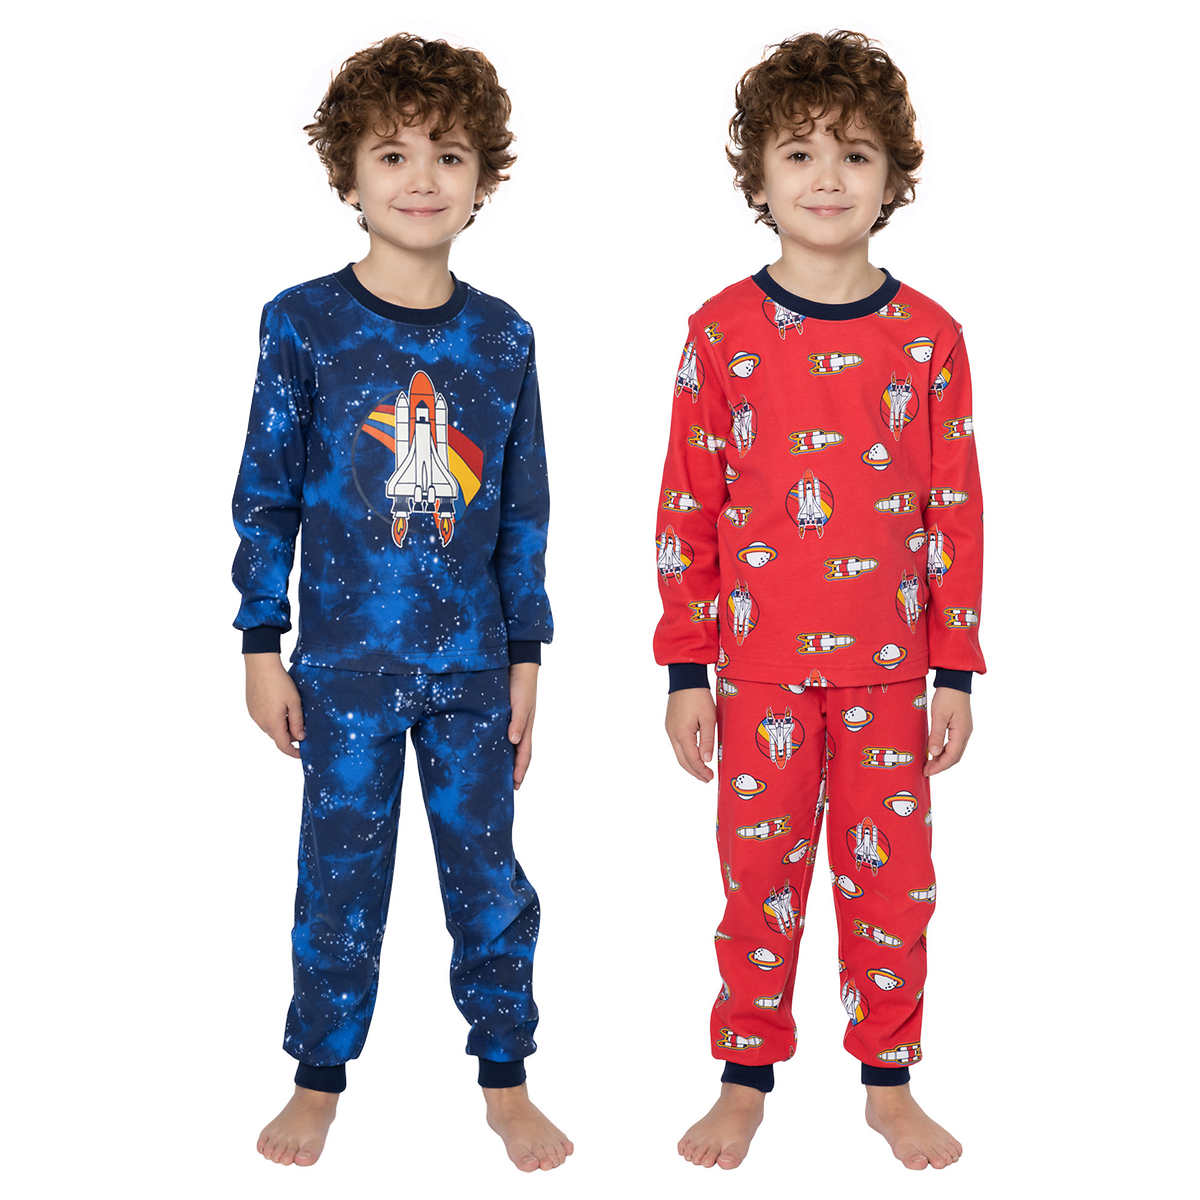 Pekkle Boy's 4-Piece Pajama Set Size 2/3